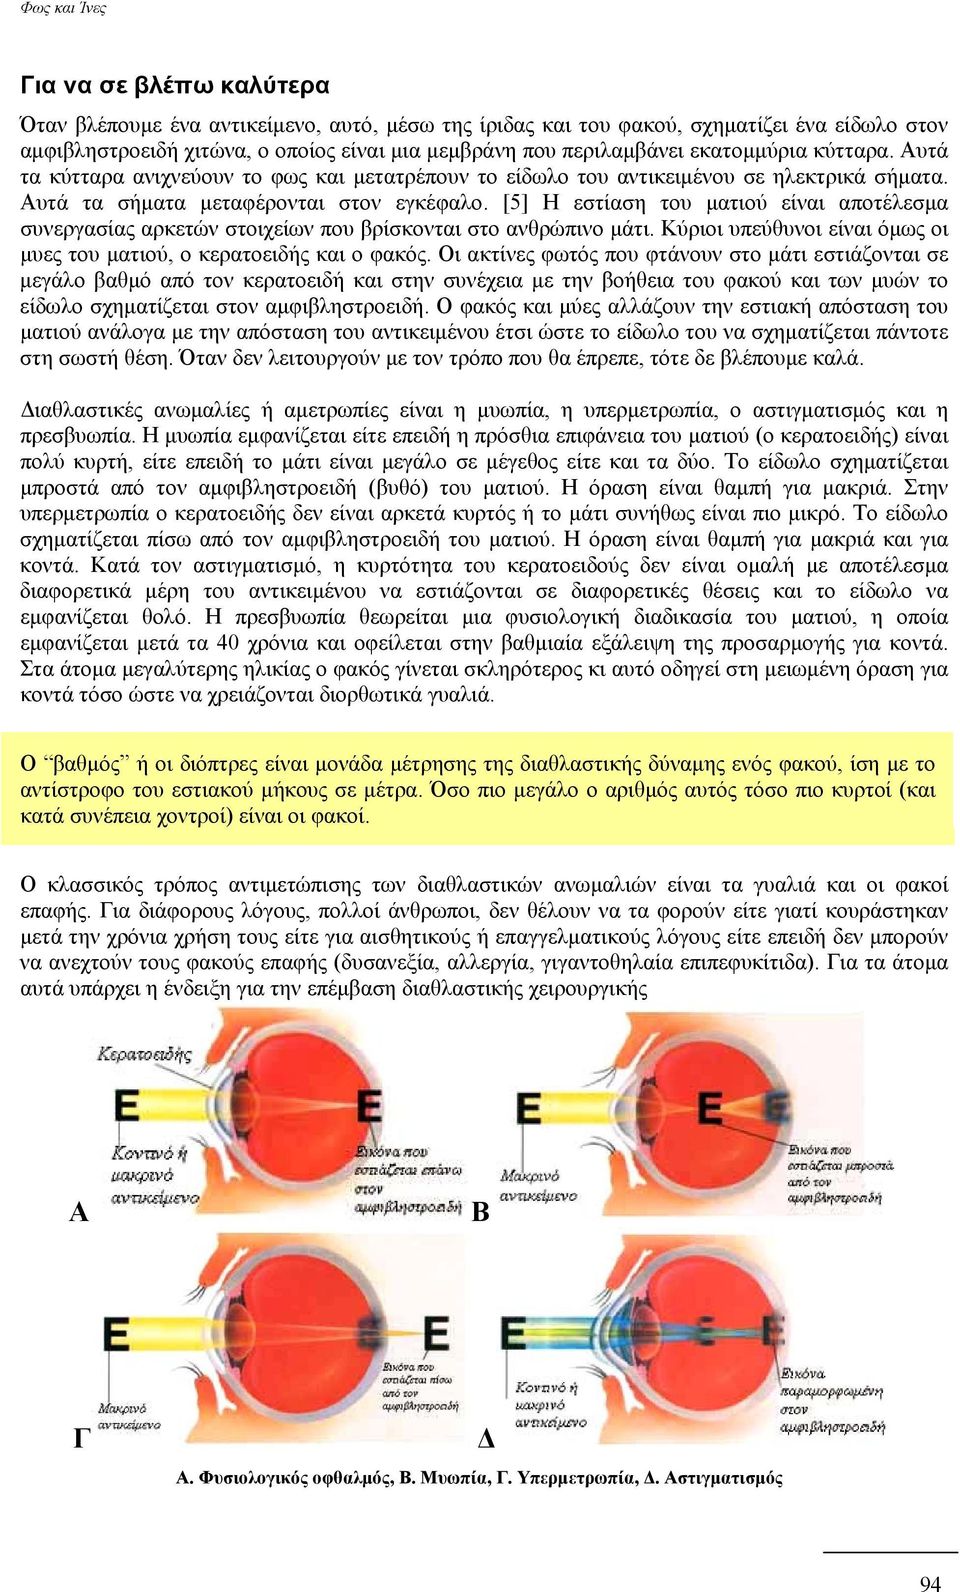 [5] Η εστίαση του ματιού είναι αποτέλεσμα συνεργασίας αρκετών στοιχείων που βρίσκονται στο ανθρώπινο μάτι. Κύριοι υπεύθυνοι είναι όμως οι μυες του ματιού, ο κερατοειδής και ο φακός.